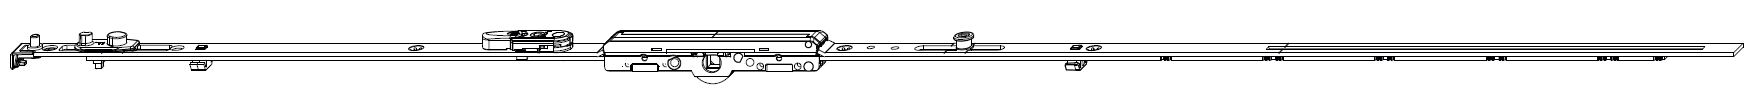 MAICO -  Cremonese MULTI-MATIC anta ribalta antieffrazione altezza maniglia fissa con piedino e dss per ribalta e bilanciere - gr / dim. 1090 - entrata 6,5 - alt. man. 400 - lbb/hbb 841 - 1090